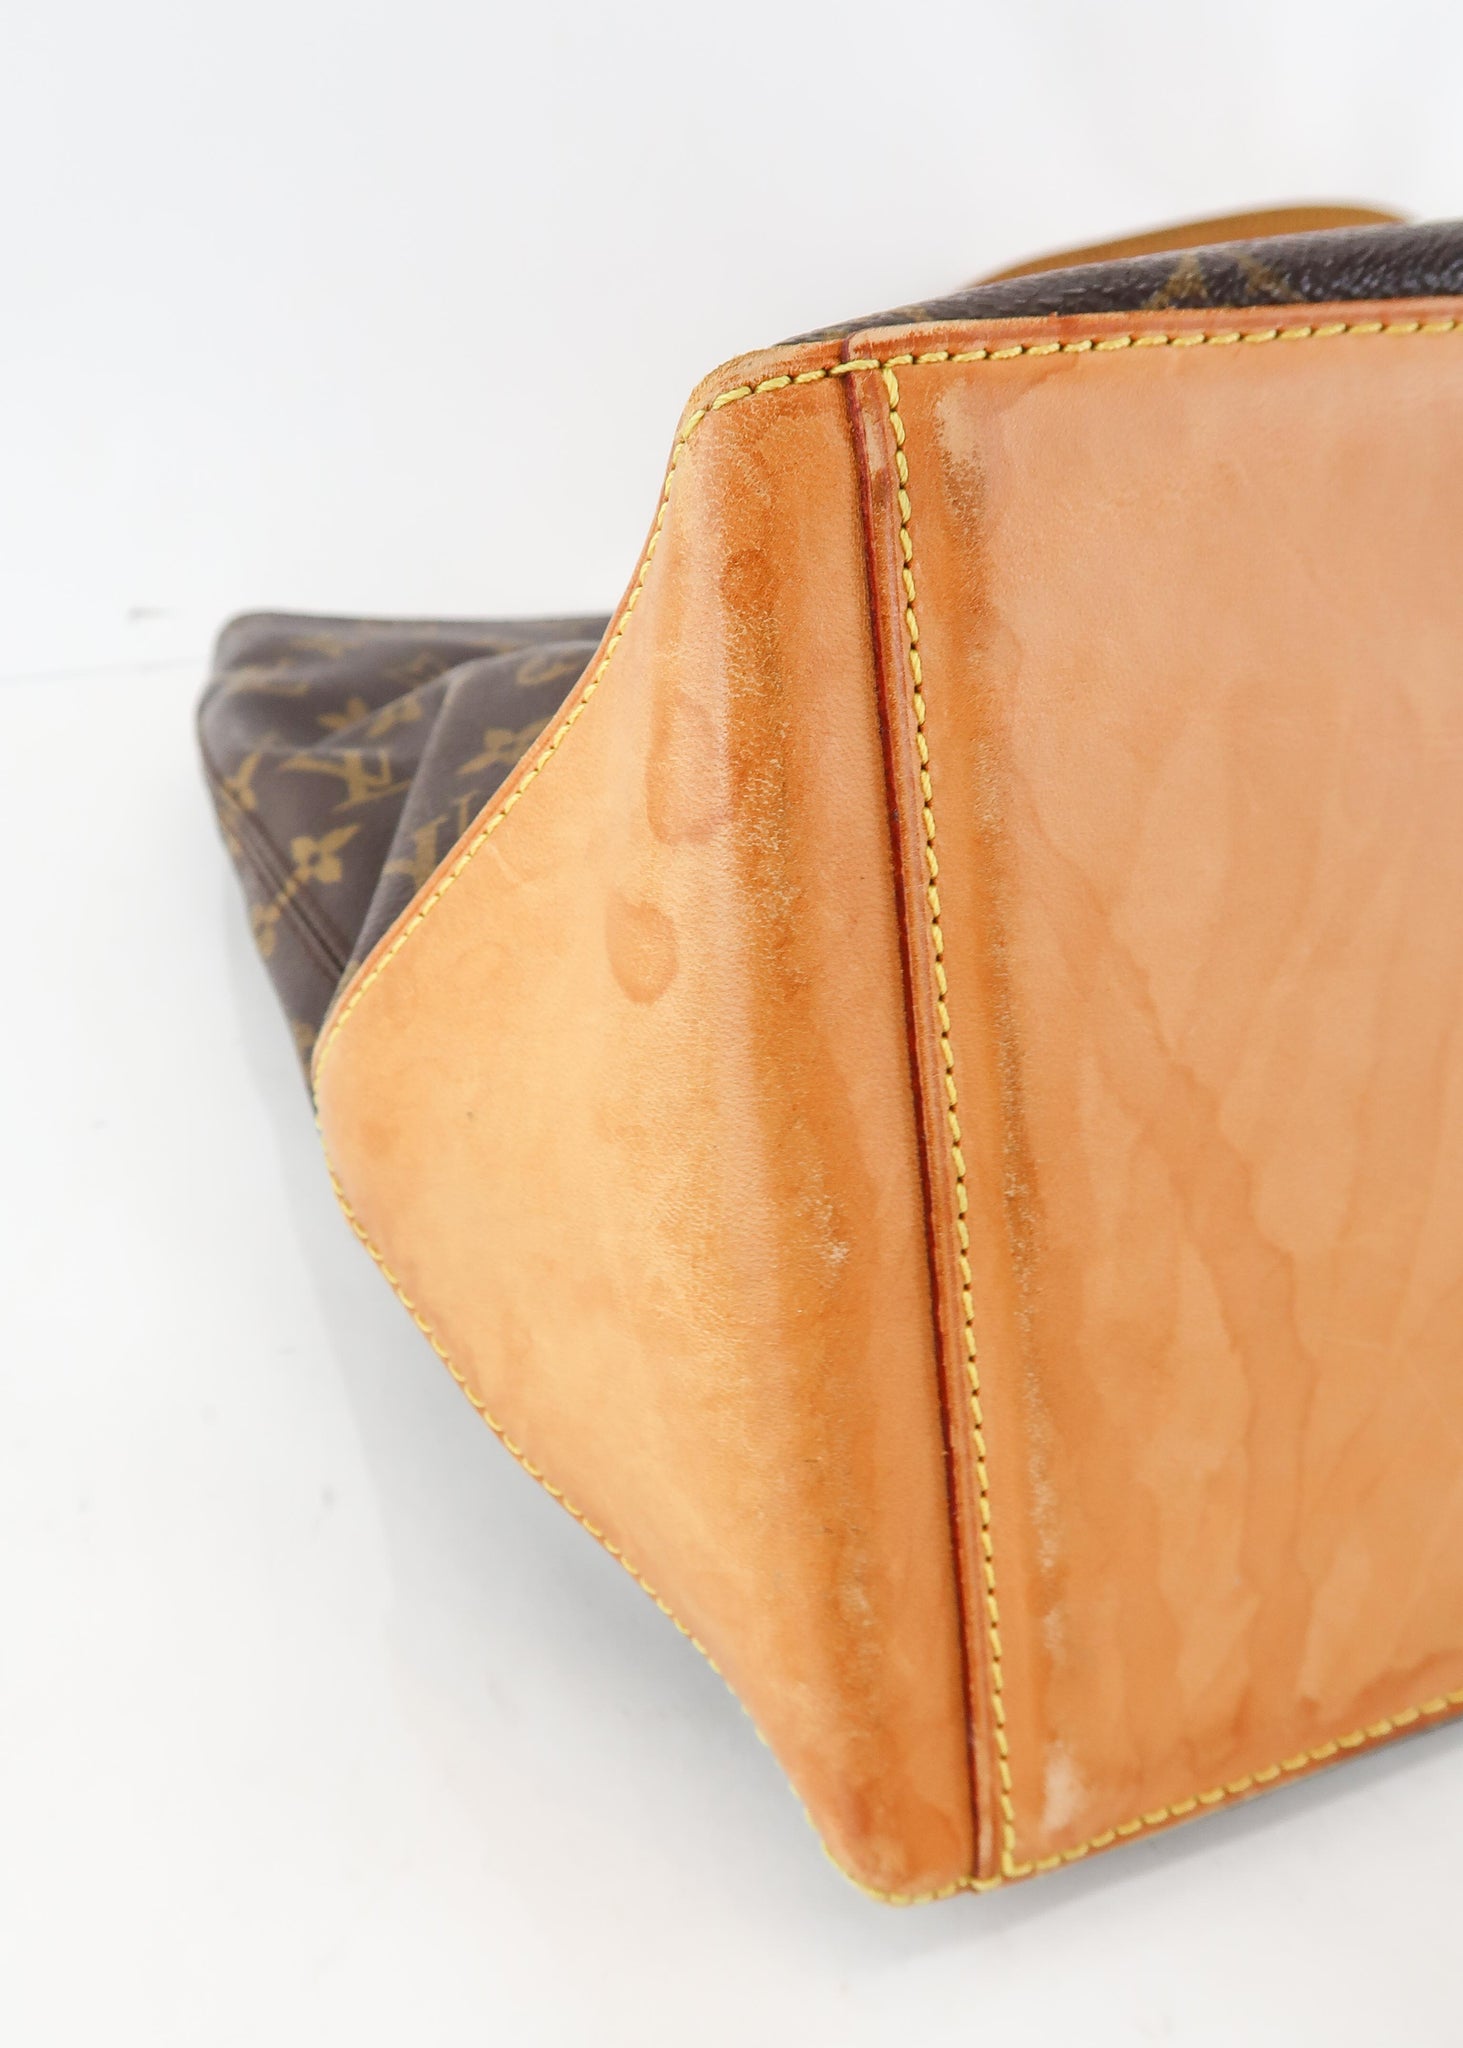 LOUIS VUITTON Cabas Mezzo Shoulder Bag Monogram Leather Brown M51151  70JF167